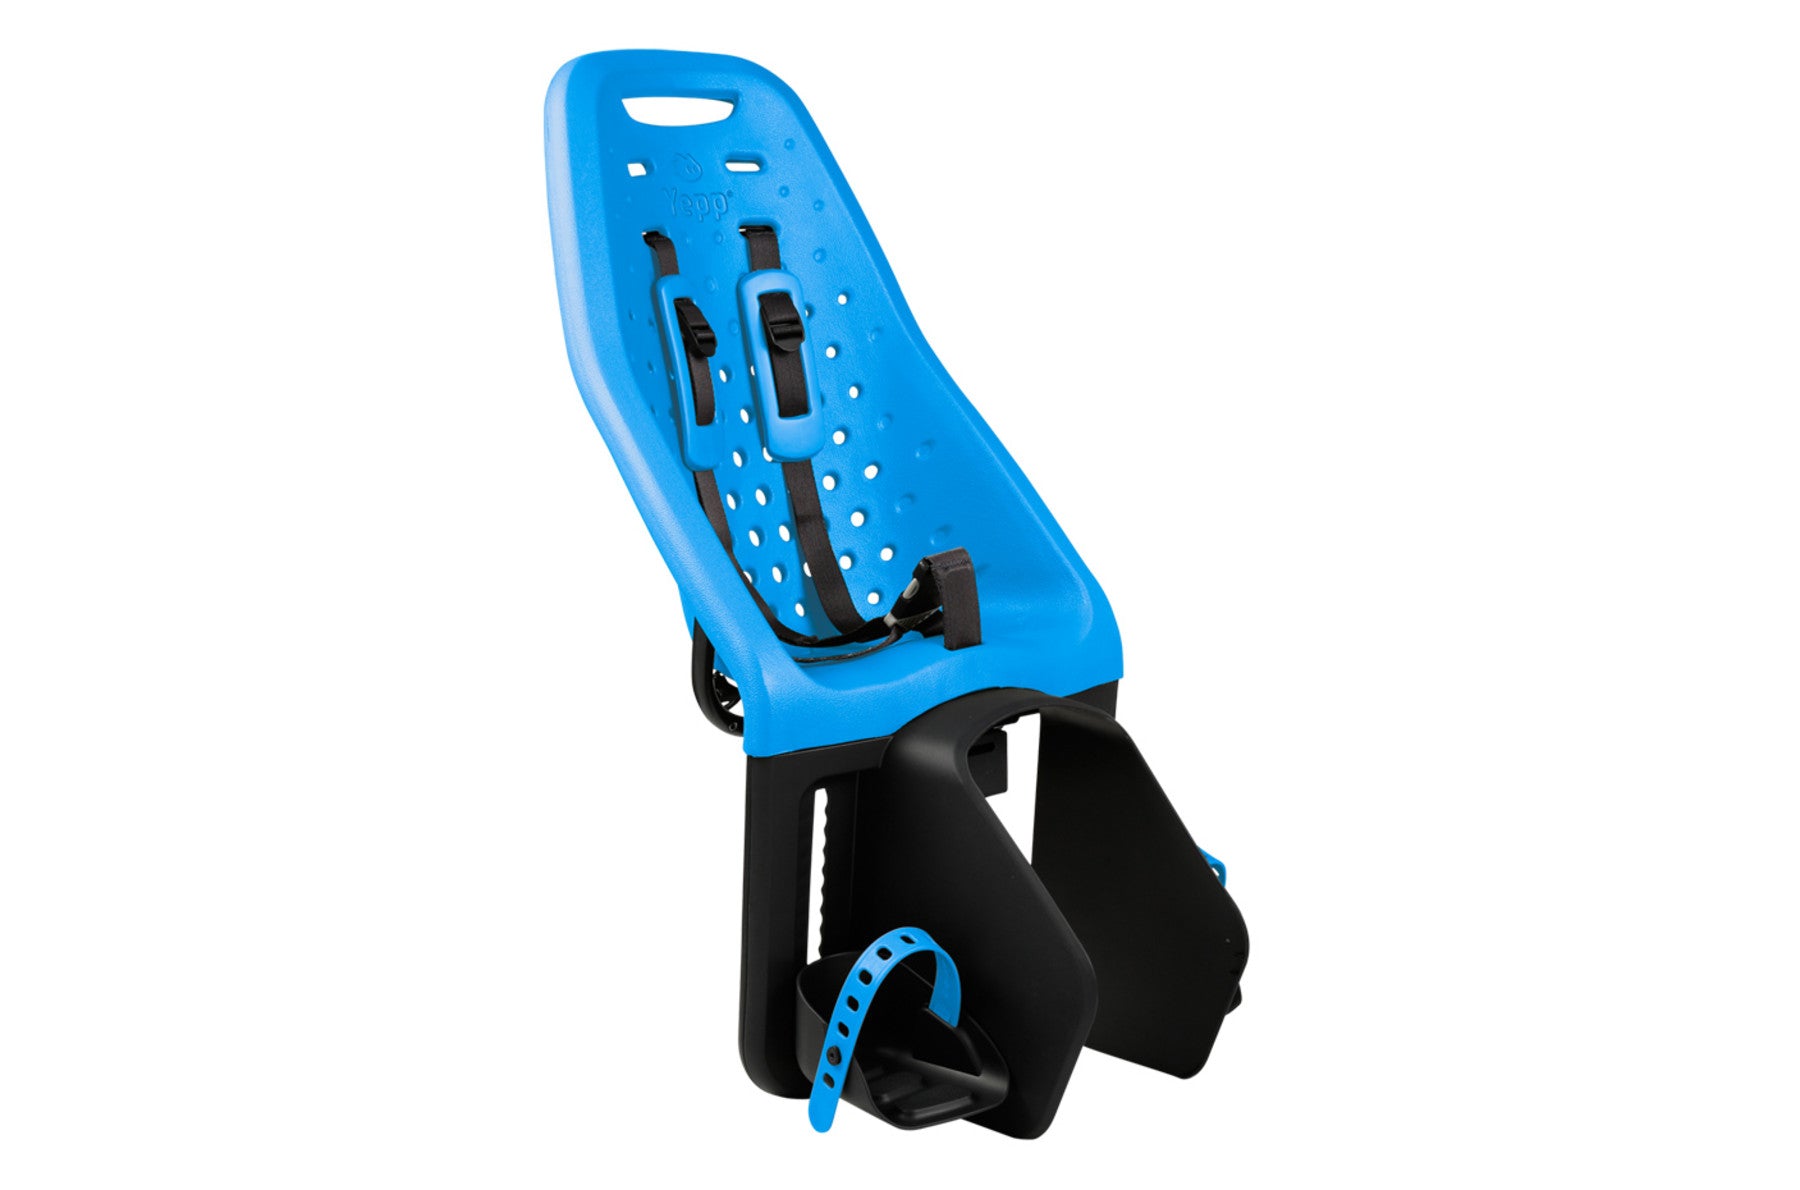 yepp bike seat adapter